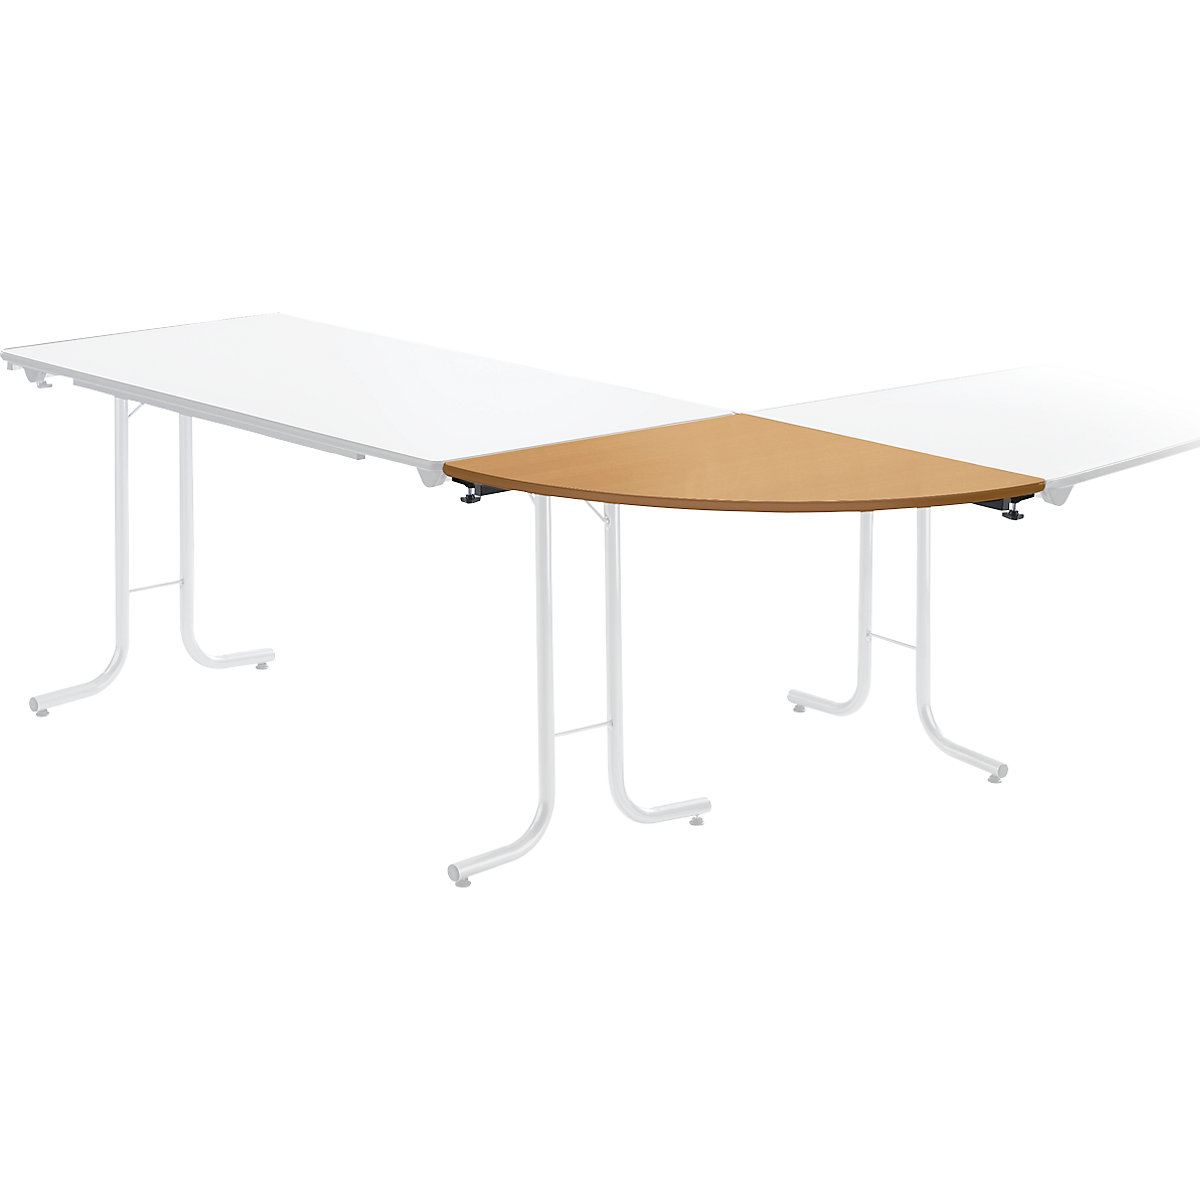 Prídavný stôl ku sklápaciemu stolu, tvar dosky štvrťkruh, 700 x 700 mm, podstavec čierna, doska vzor buk-4